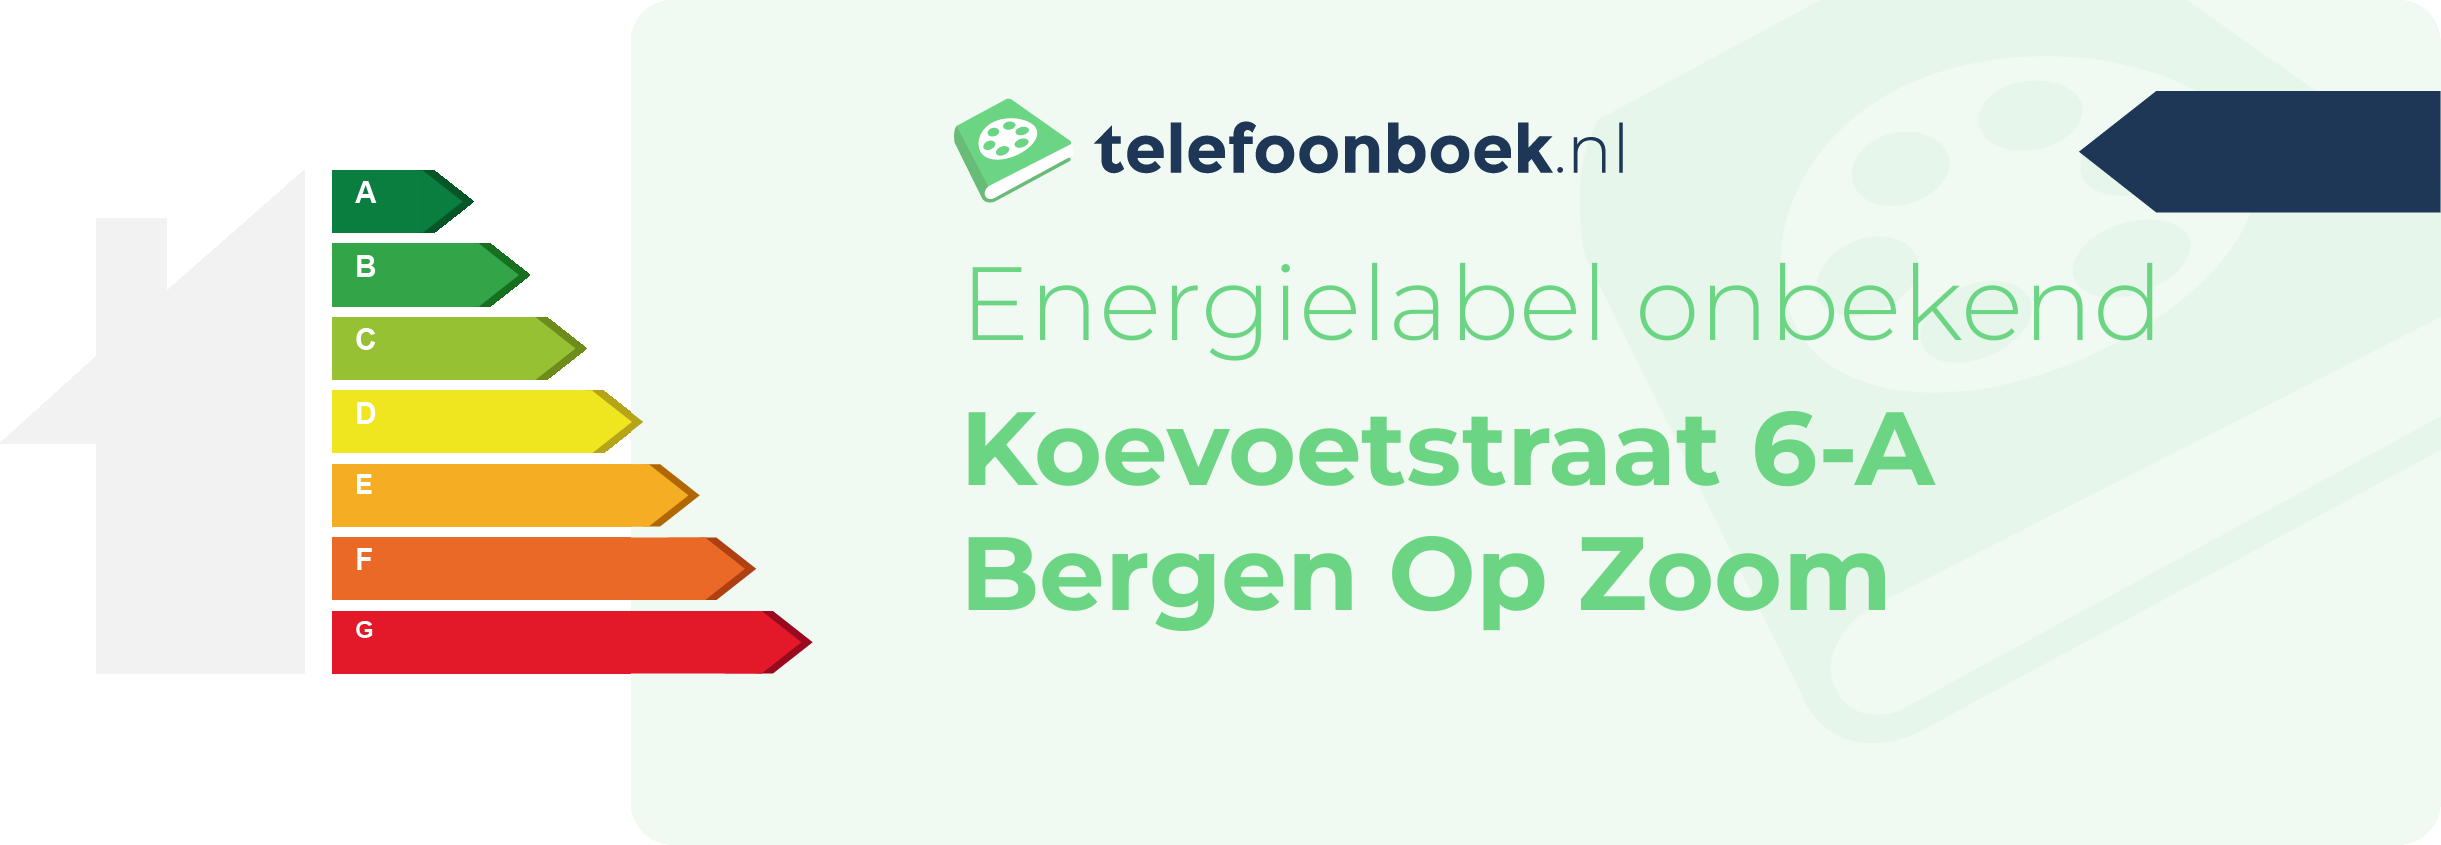 Energielabel Koevoetstraat 6-A Bergen Op Zoom